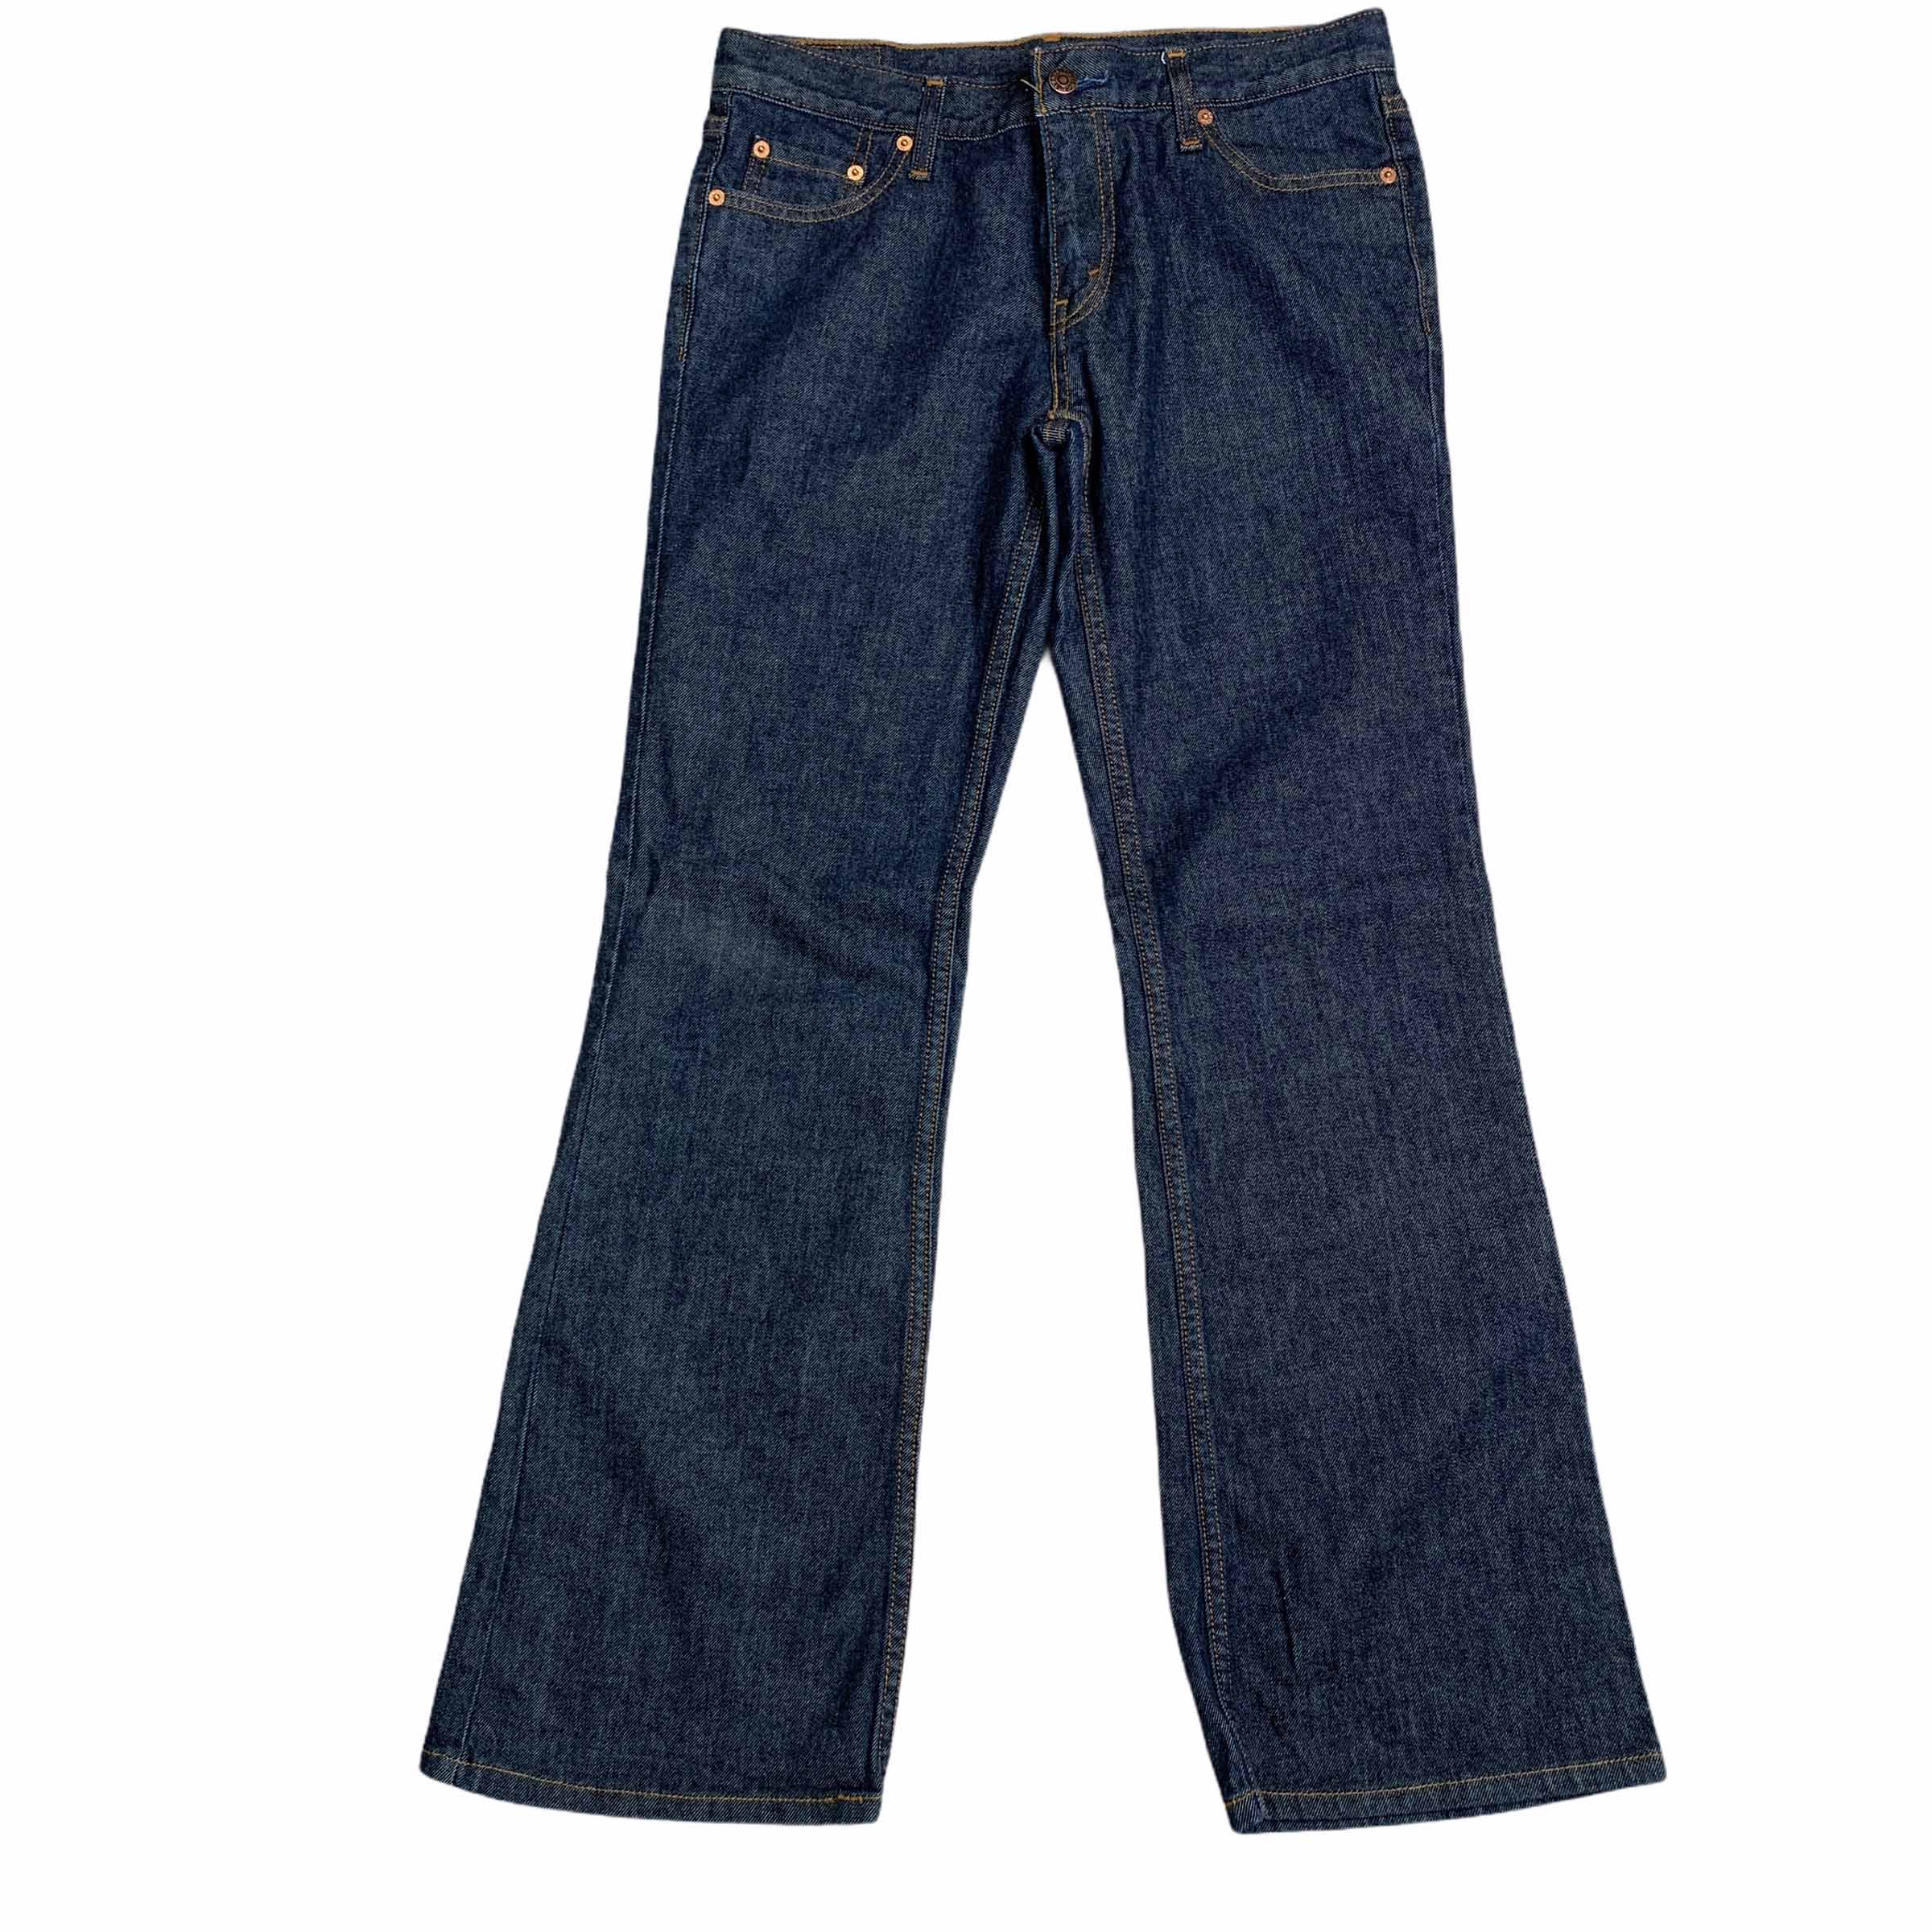 [Levis] (Vintage) 02578 Denim Pants - Size 30/32